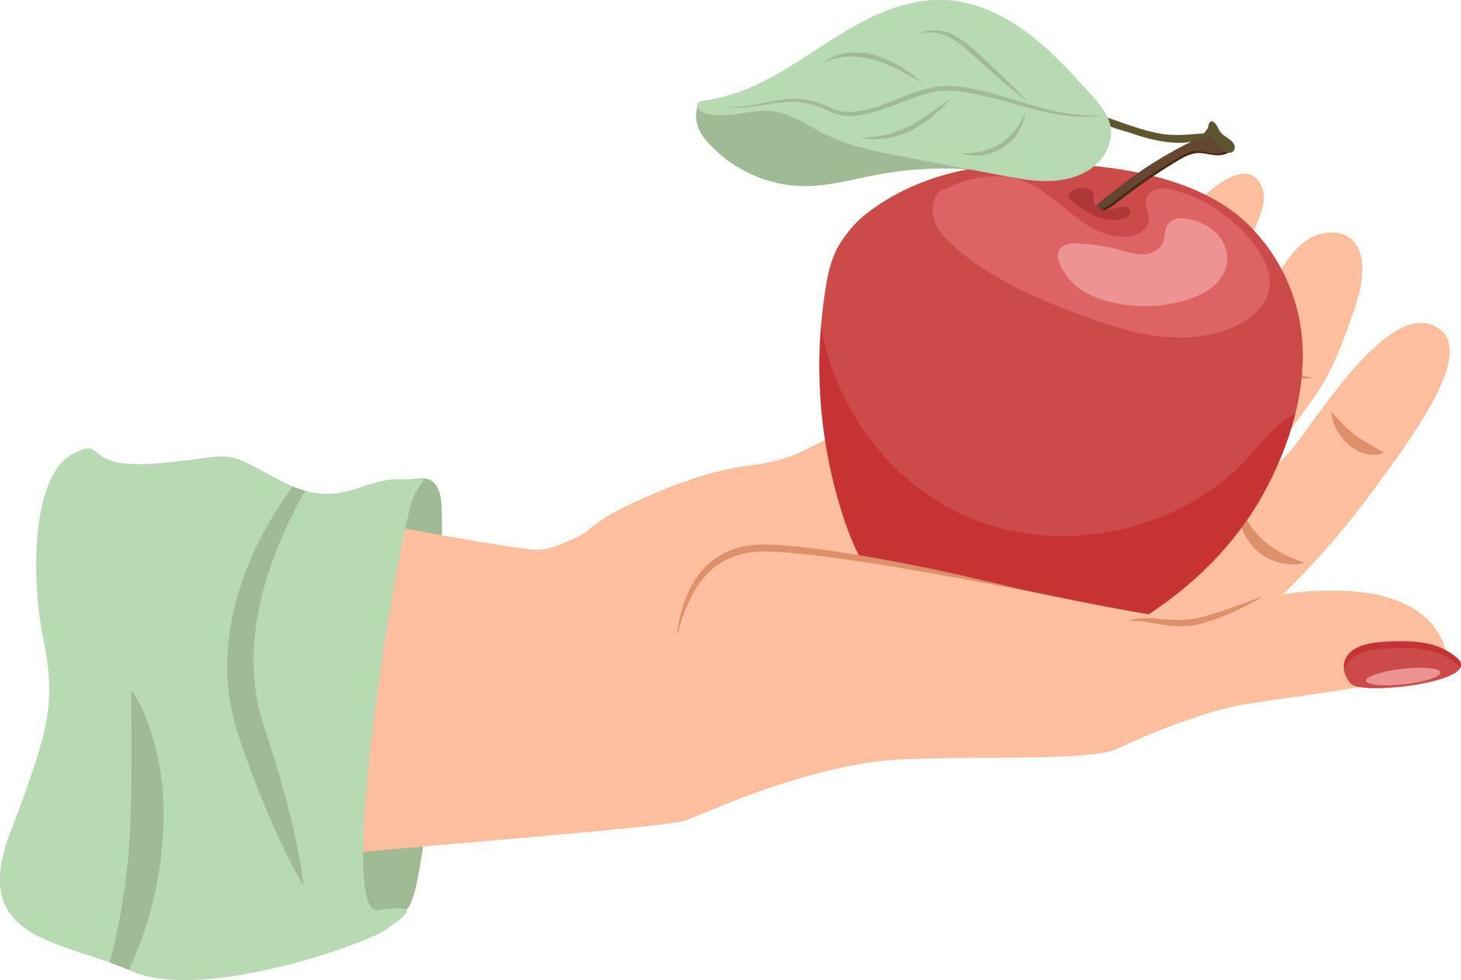 hermosa mano femenina sosteniendo manzana roja en la palma abierta aislada en fondo blanco vector